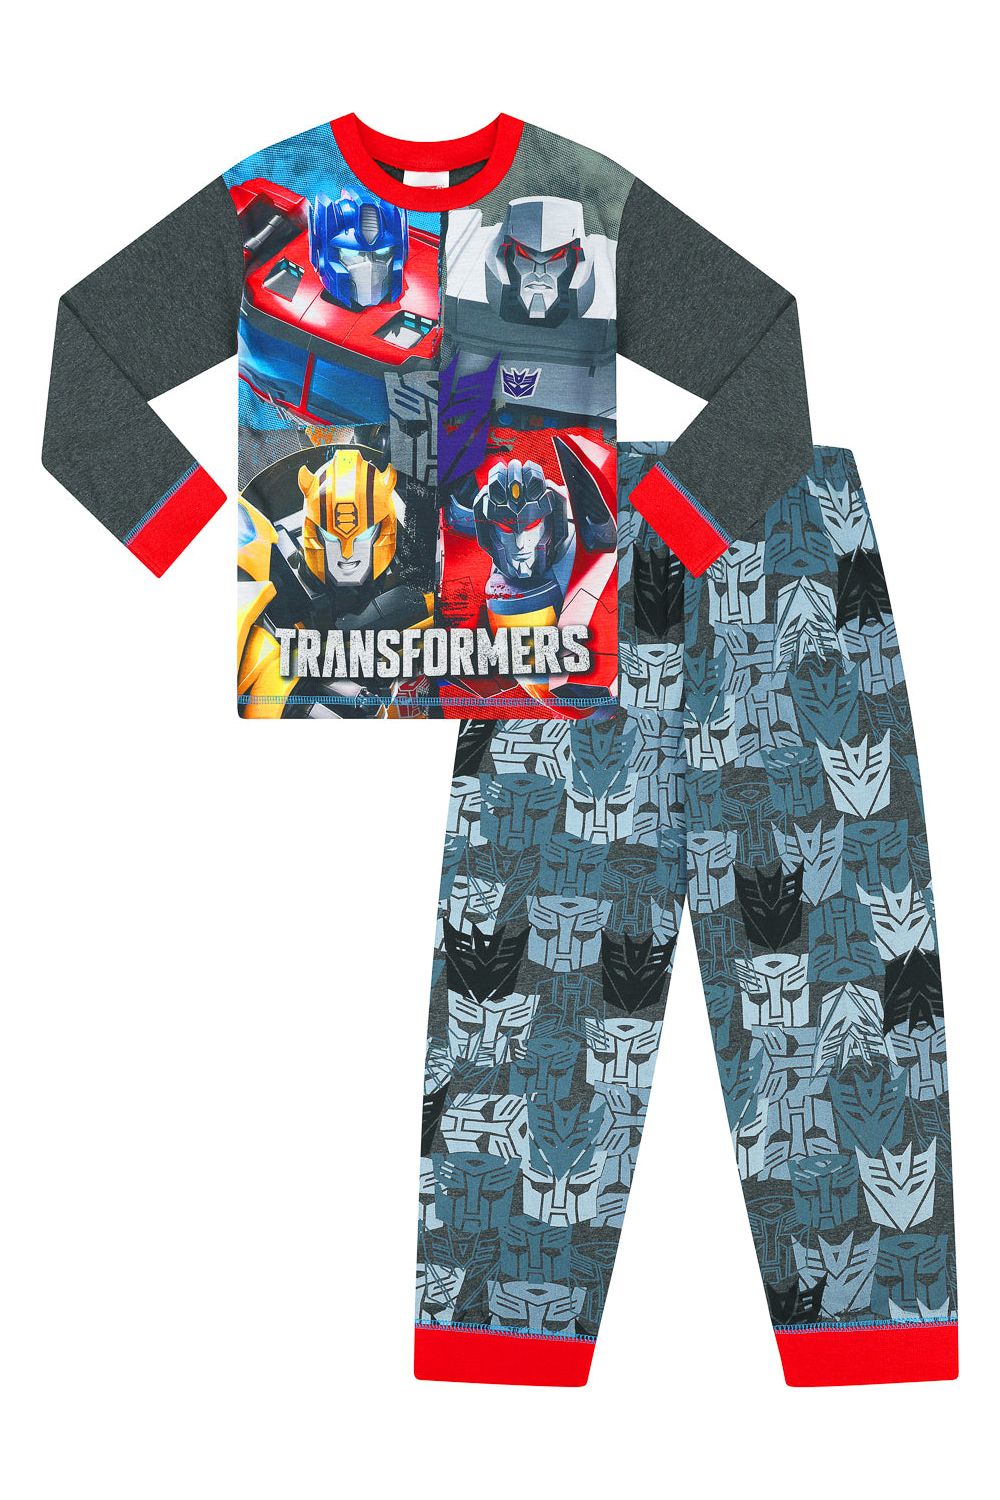 Boys Transformers Optimus Prime and Bumblebee Long Pyjamas - Pyjamas.com